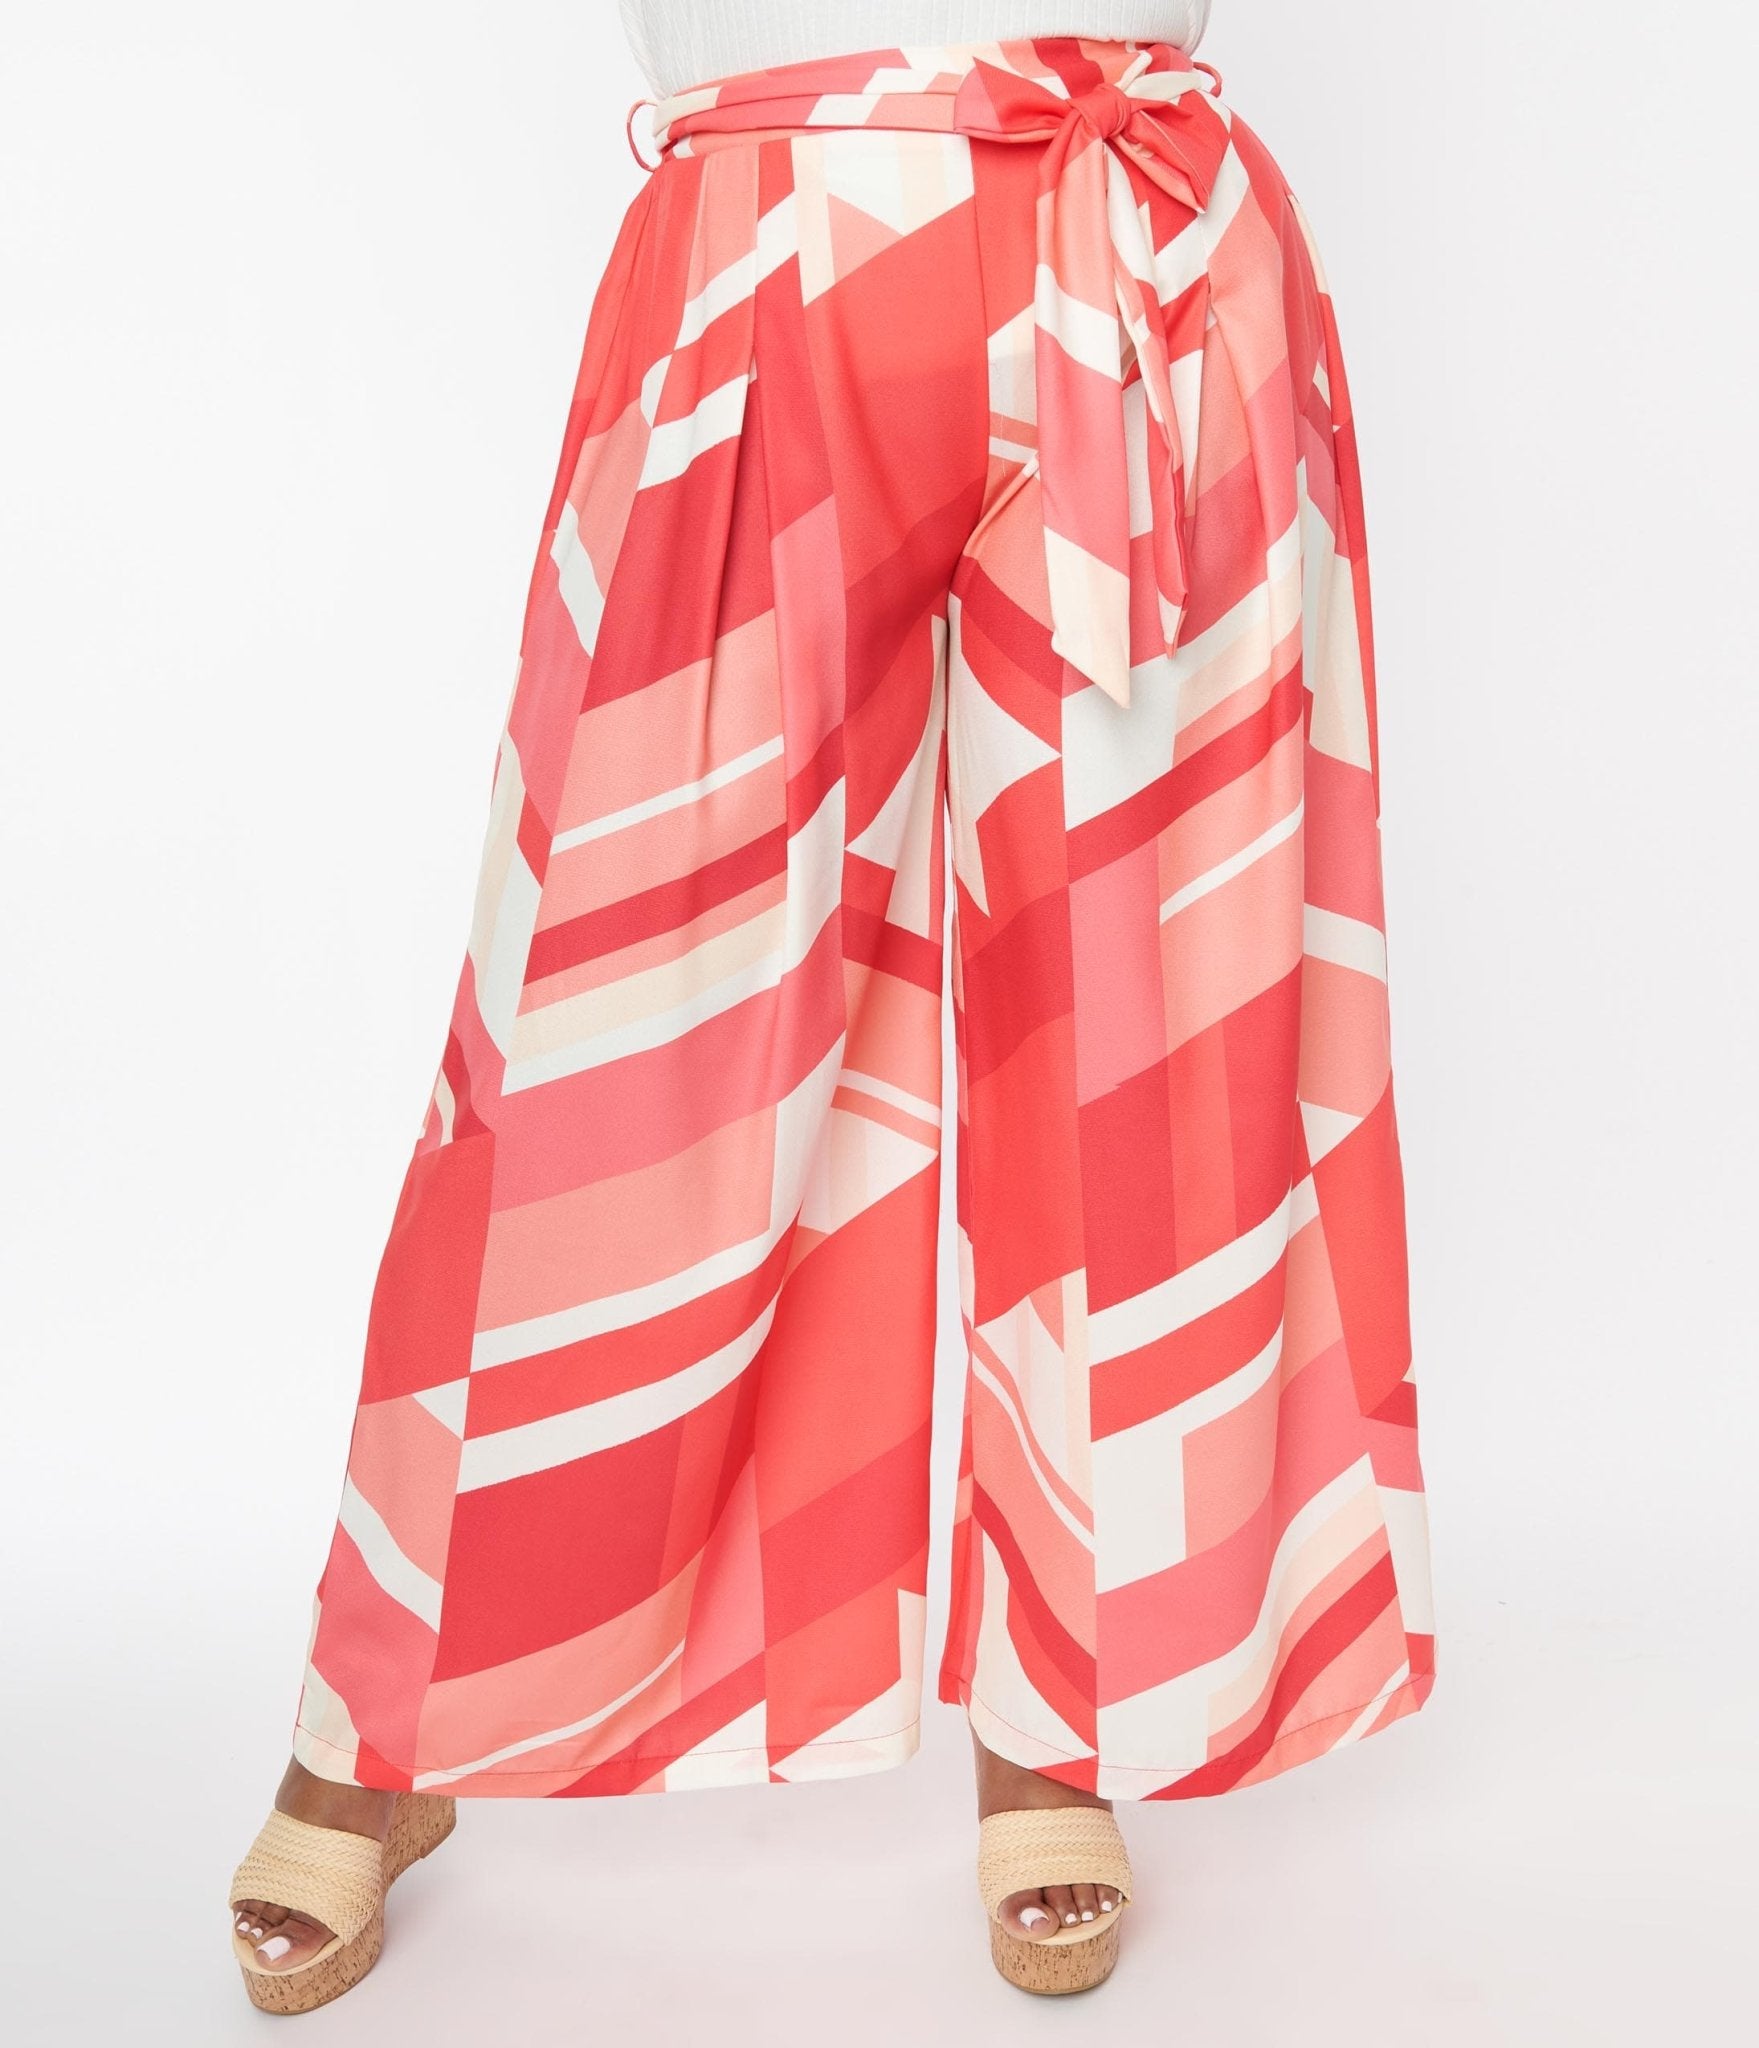 Unique Vintage Plus Size Hot Pink High Waist Rachelle Capri Pants